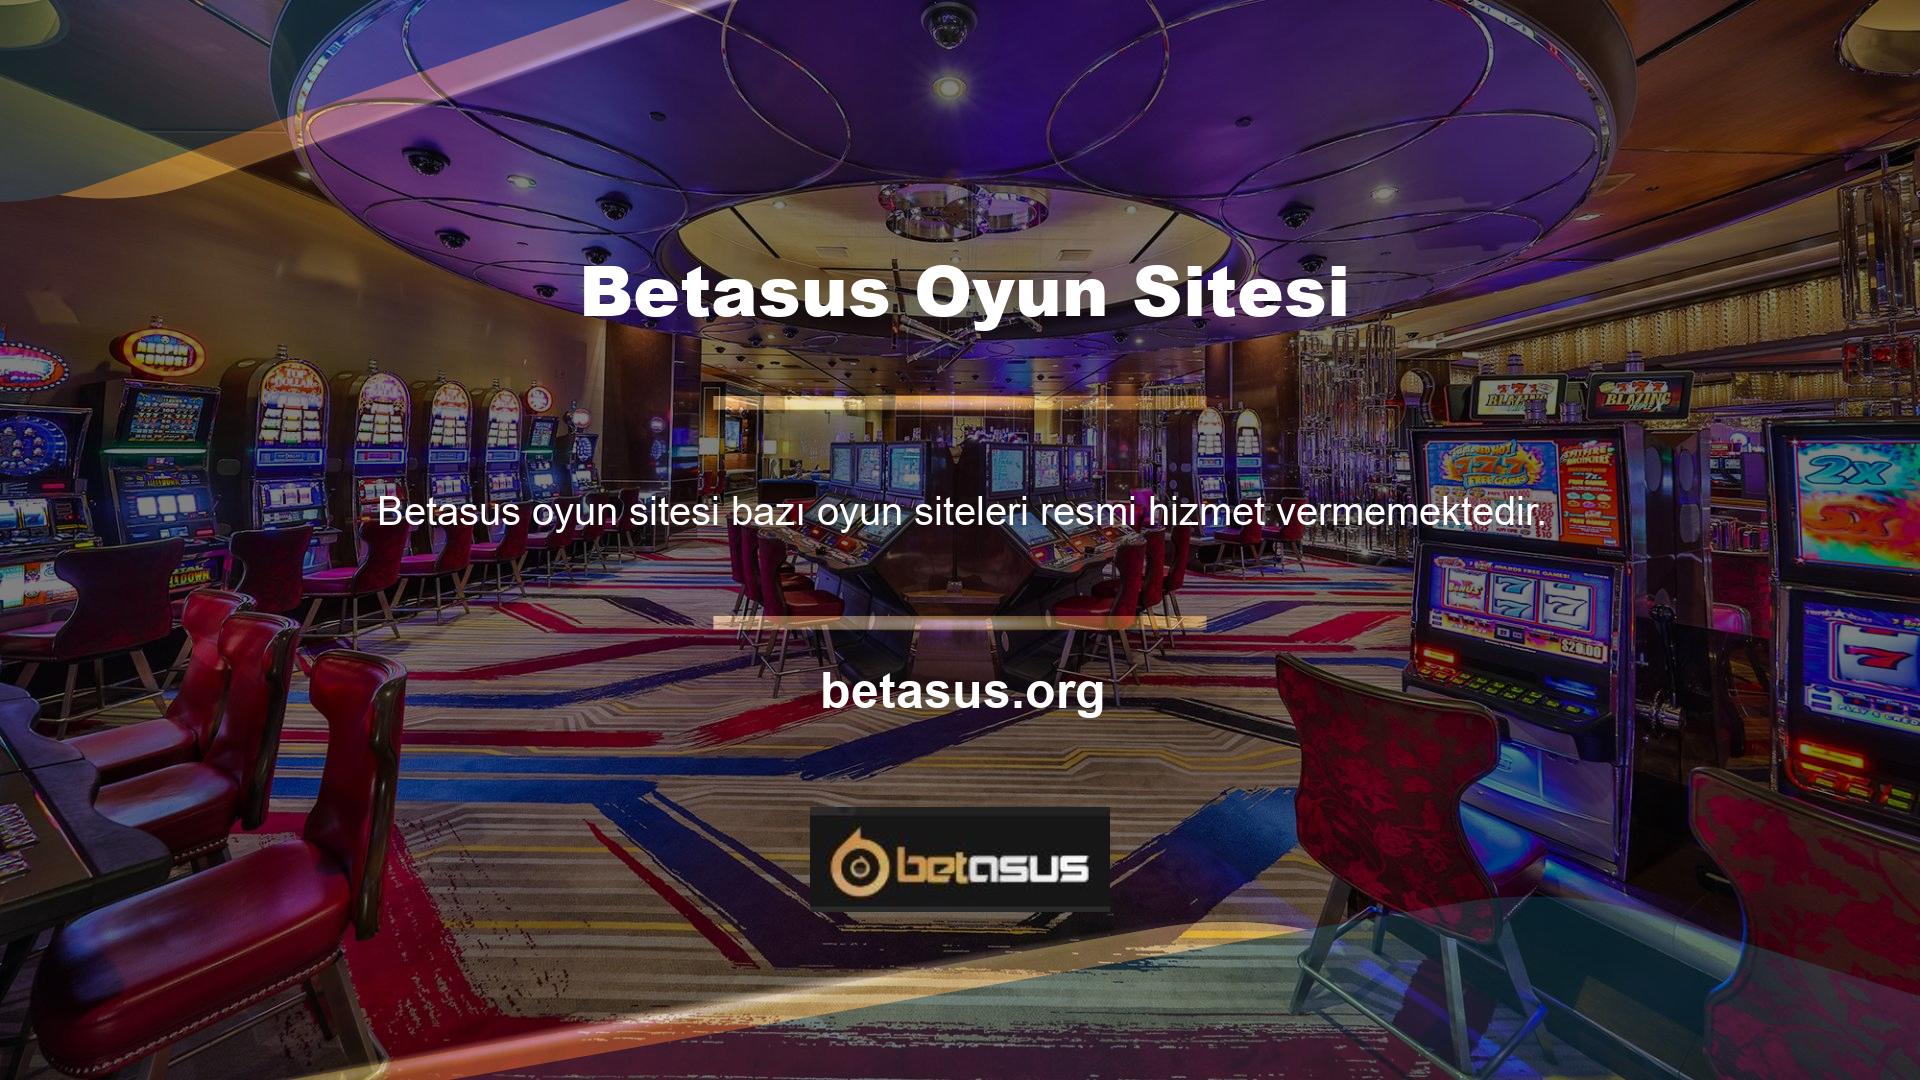 Ülkemizde casino türleri yasak olduğundan yasa dışı bahis siteleri ilk tercih olmaktadır